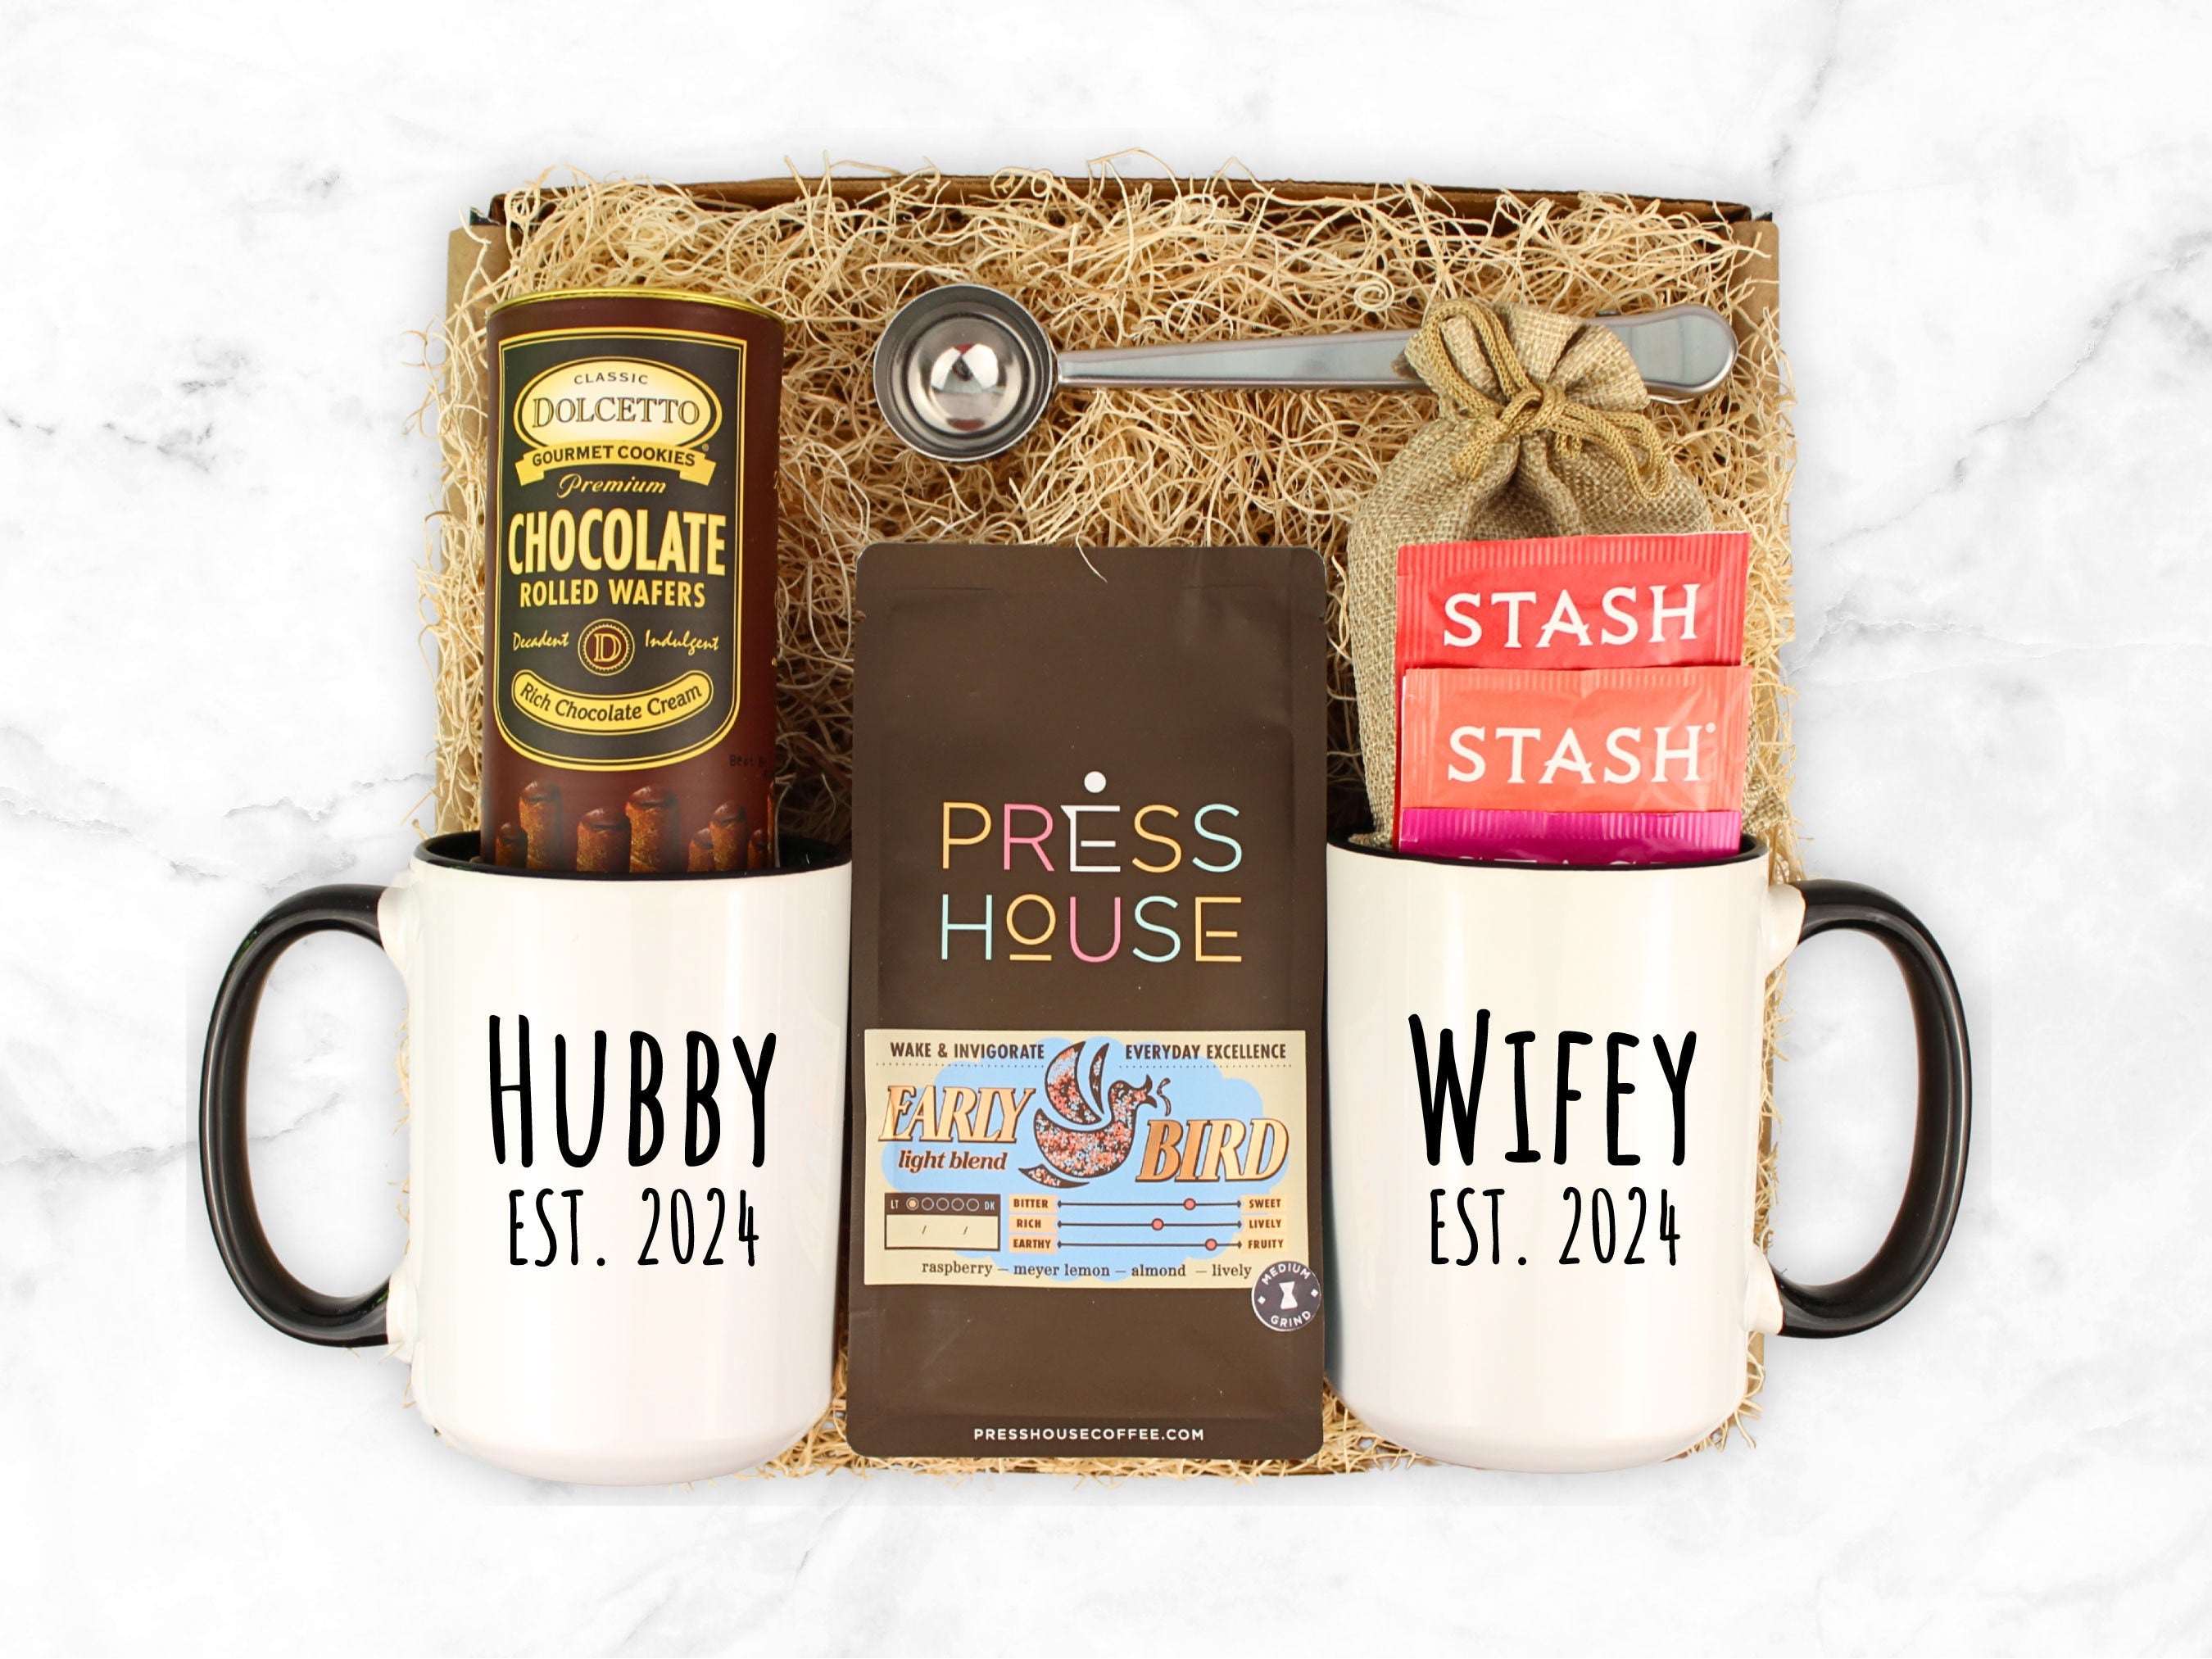 Hubby and Wifey Wedding Mug Set Gift Box